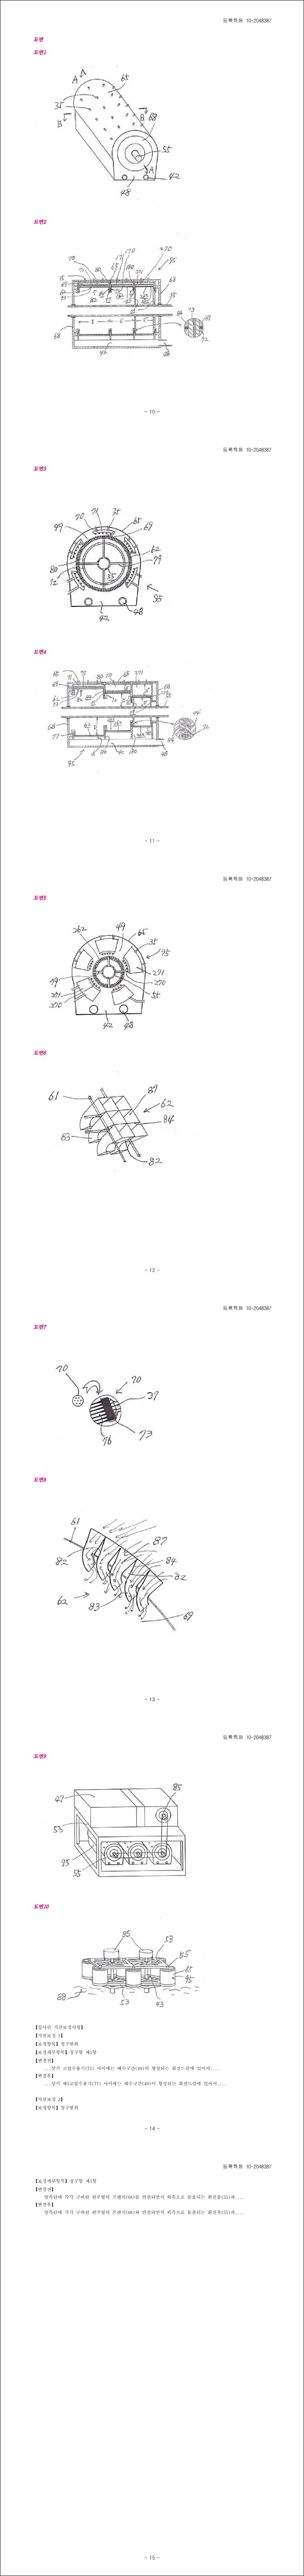 특허 제10-2048387호(수력에 의한 회전력 보강장치, 민승기, 민중기, 